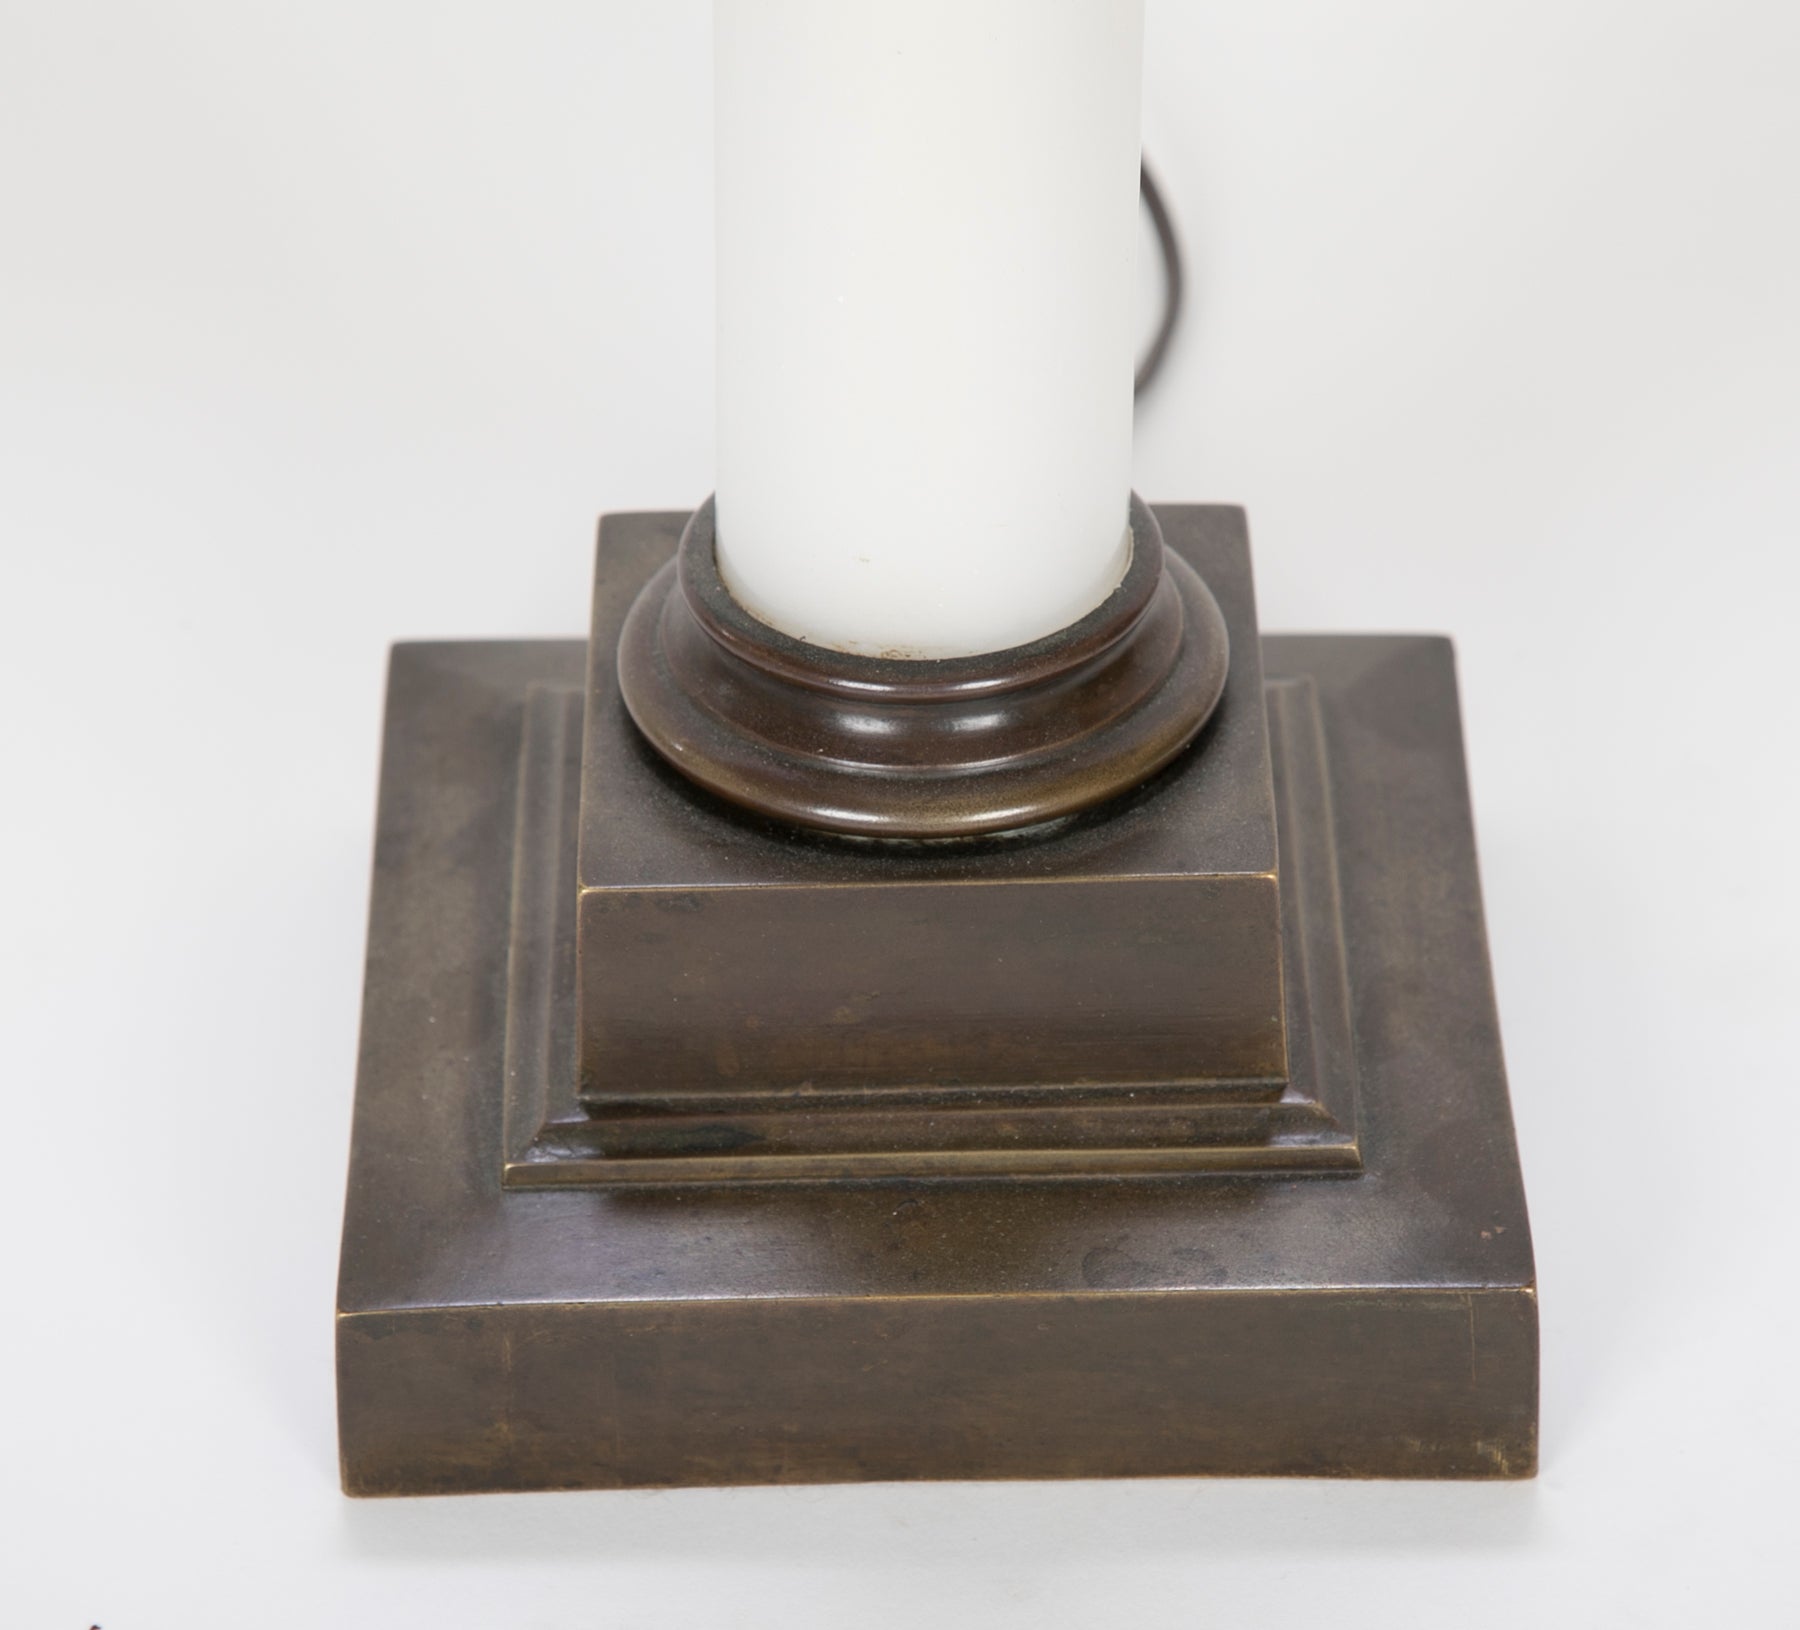 Opaline Glass Oil Lamp